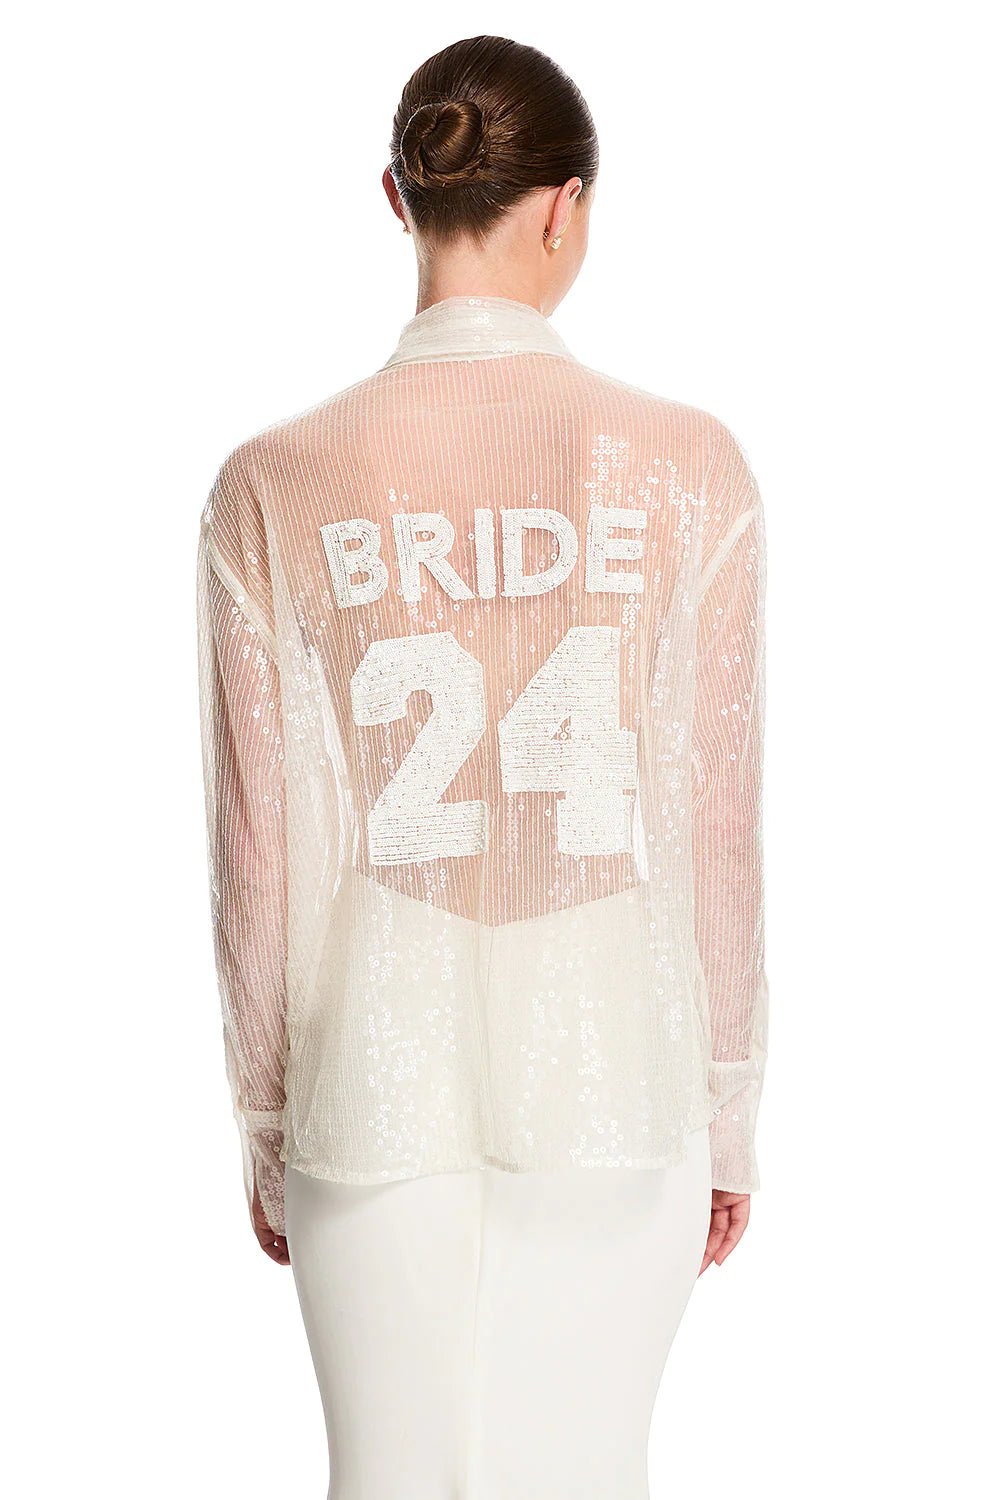 Chosen by Kyha, Sylvester Bride Sequin Shirt